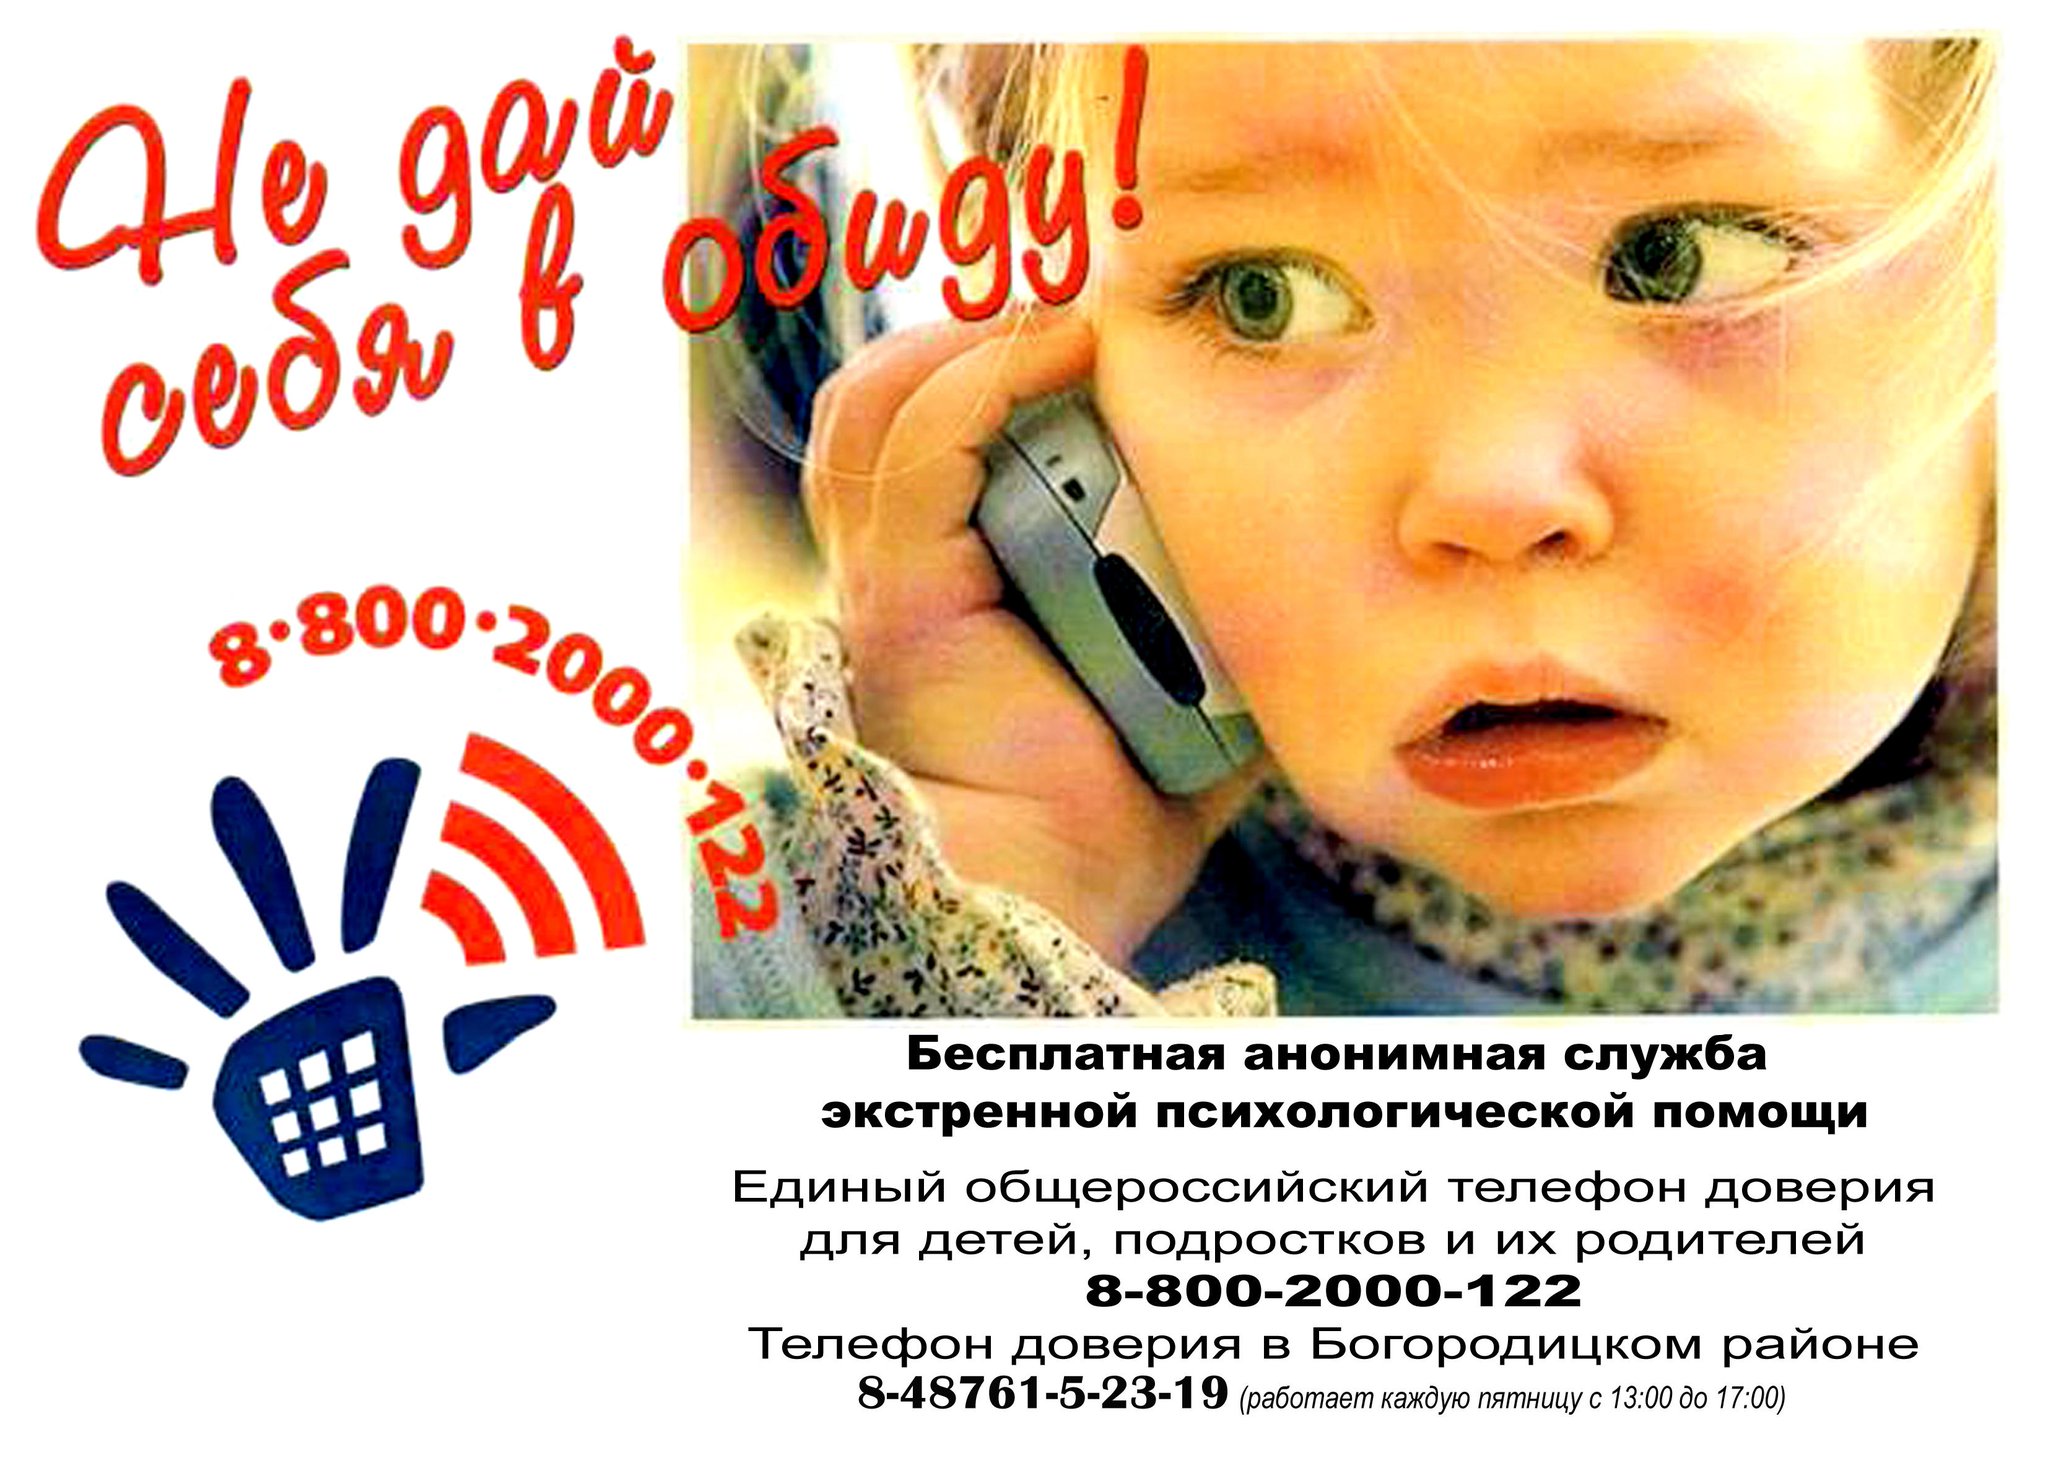 Телефон доверия видео. Единый детский телефон доверия 8-800-2000-122. Телефон доверия. Телефон доверия для детей. Детские телефоны доверия.